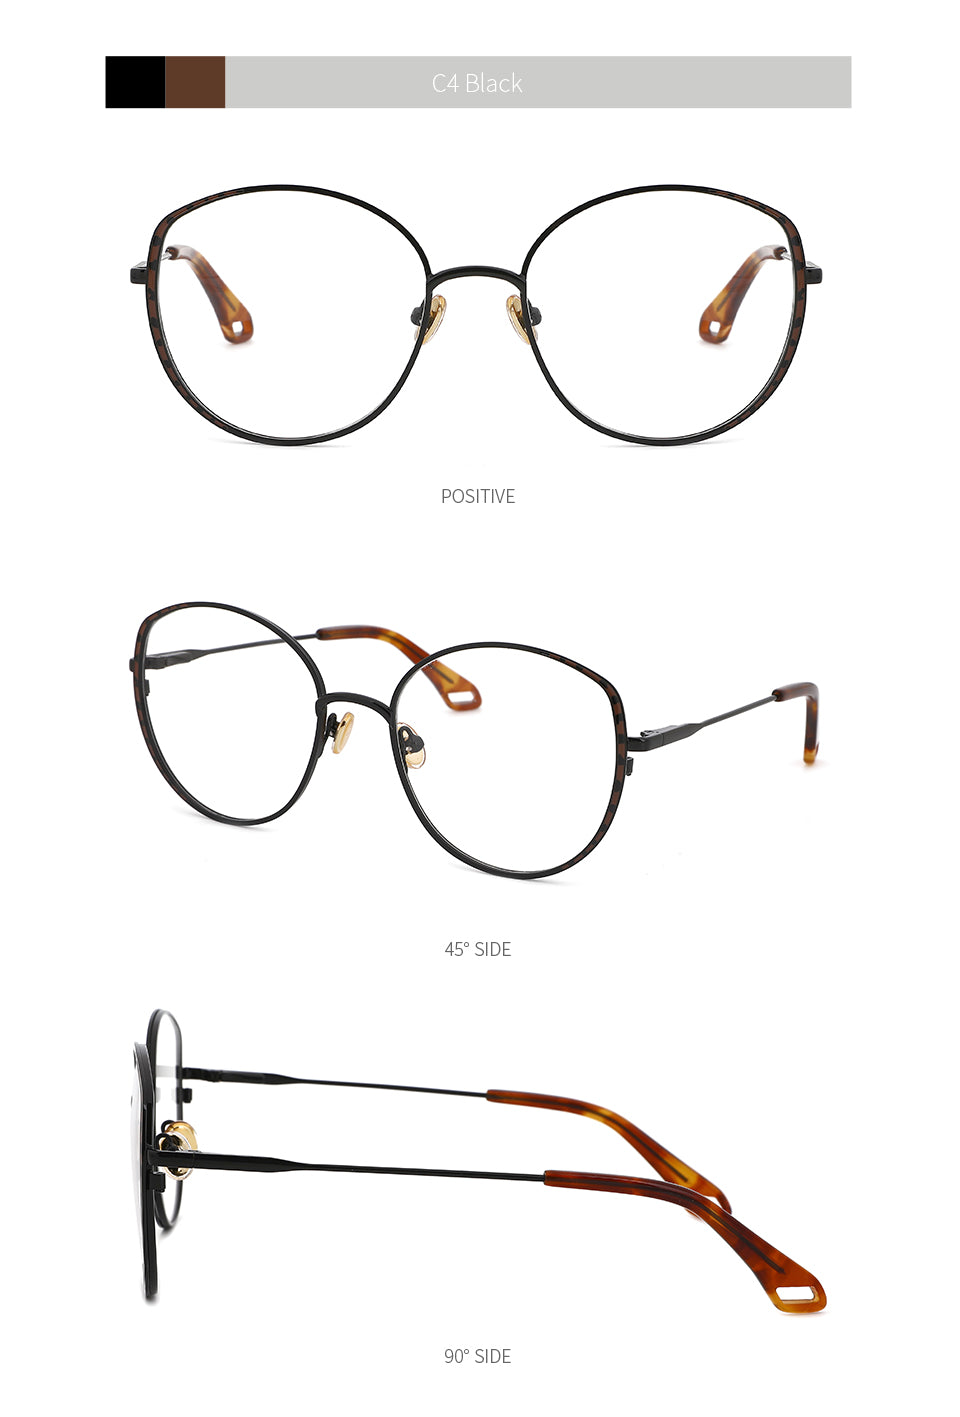 Kansept Women's Full Rim Round Stainless Steel Frame Eyeglasses Oq1003 Full Rim Kansept   